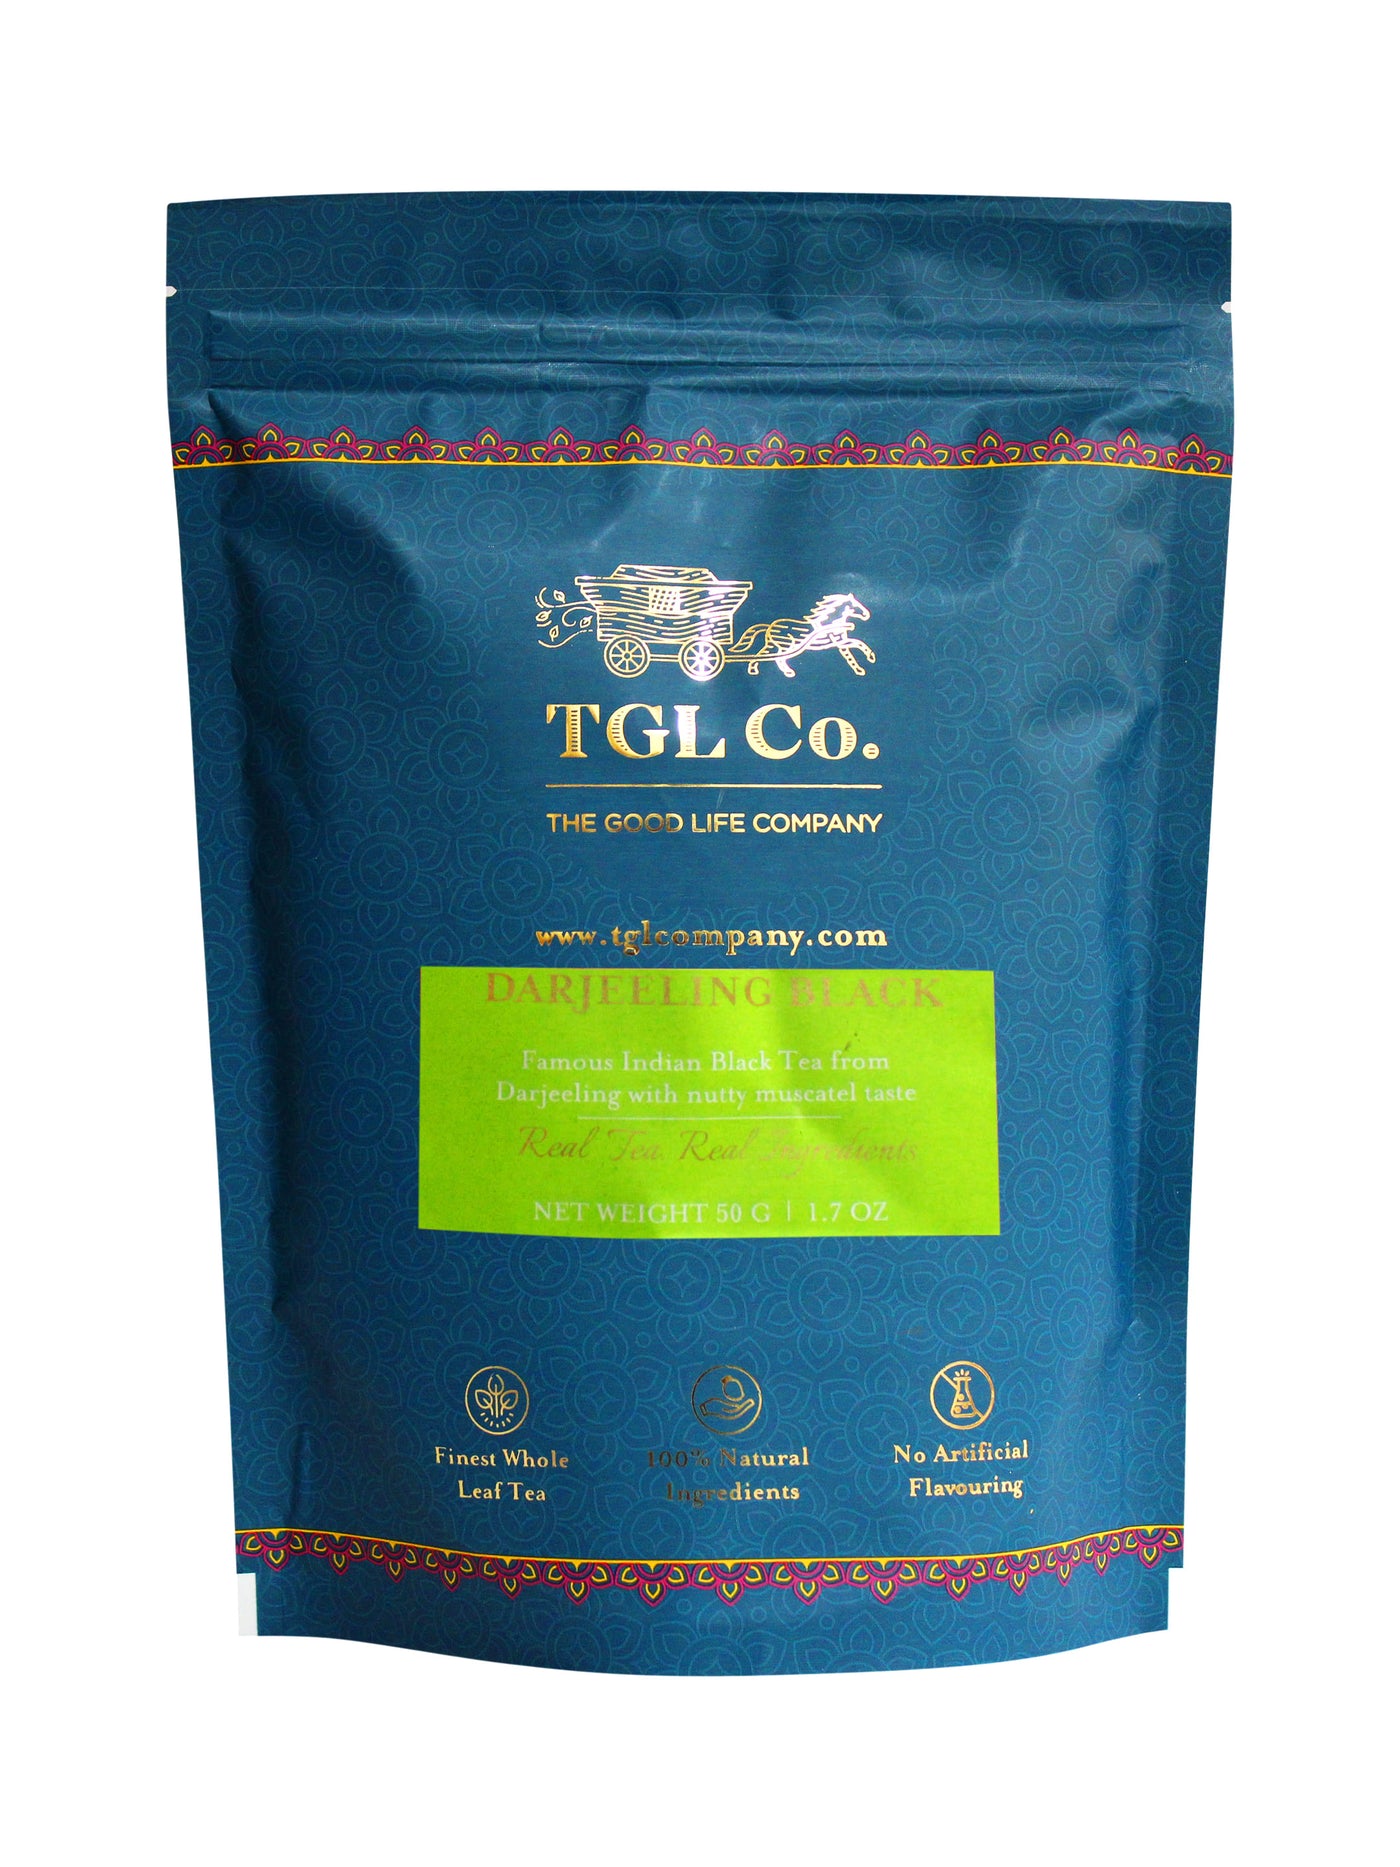 Darjeeling Black Tea Bags / Loose Tea